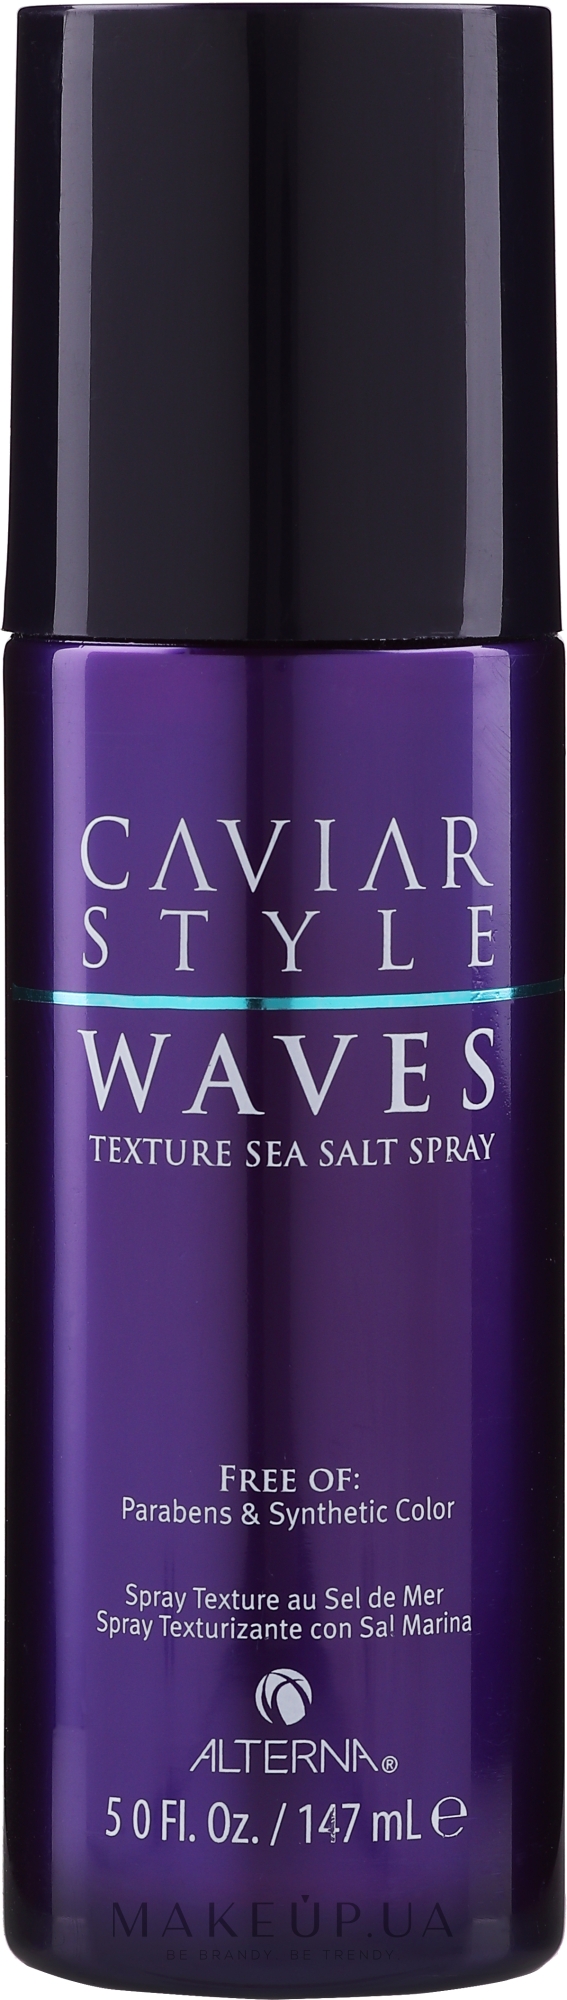 Alterna Caviar Style Texture Sea Salt Spray